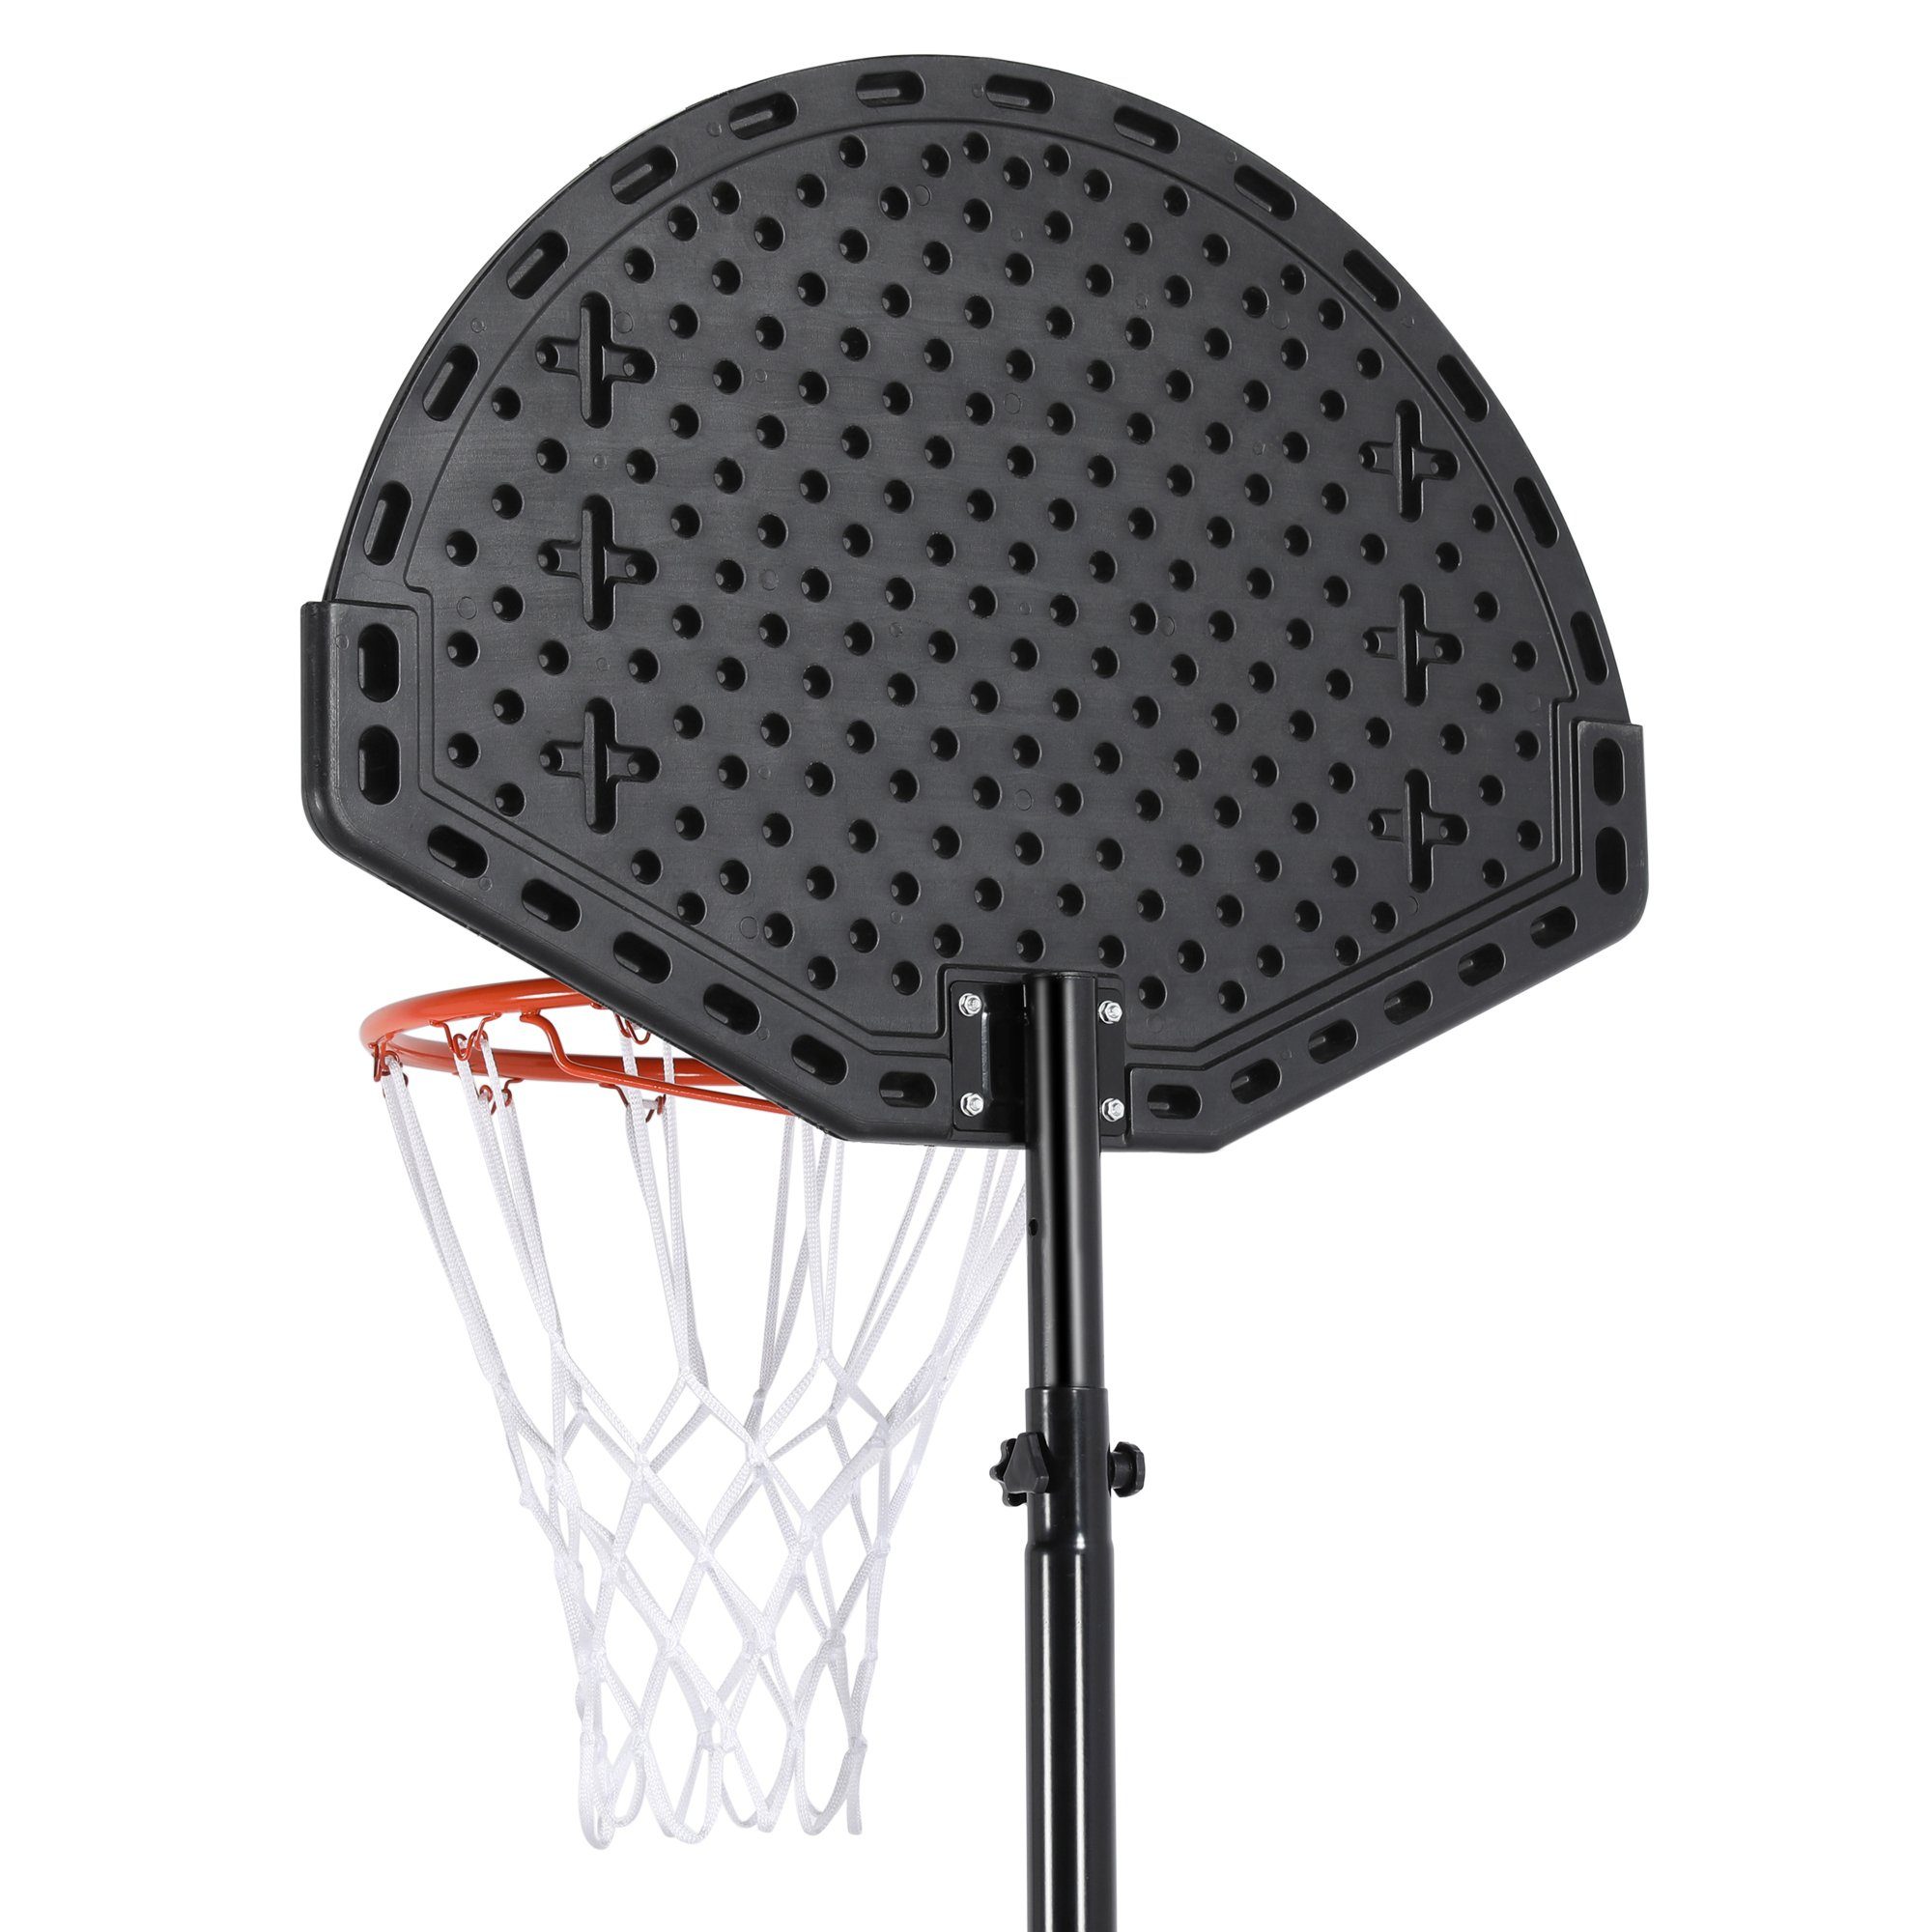 Yaheetech Basketballständer, Basketballkorb mit Rollen 277 cm bis 217